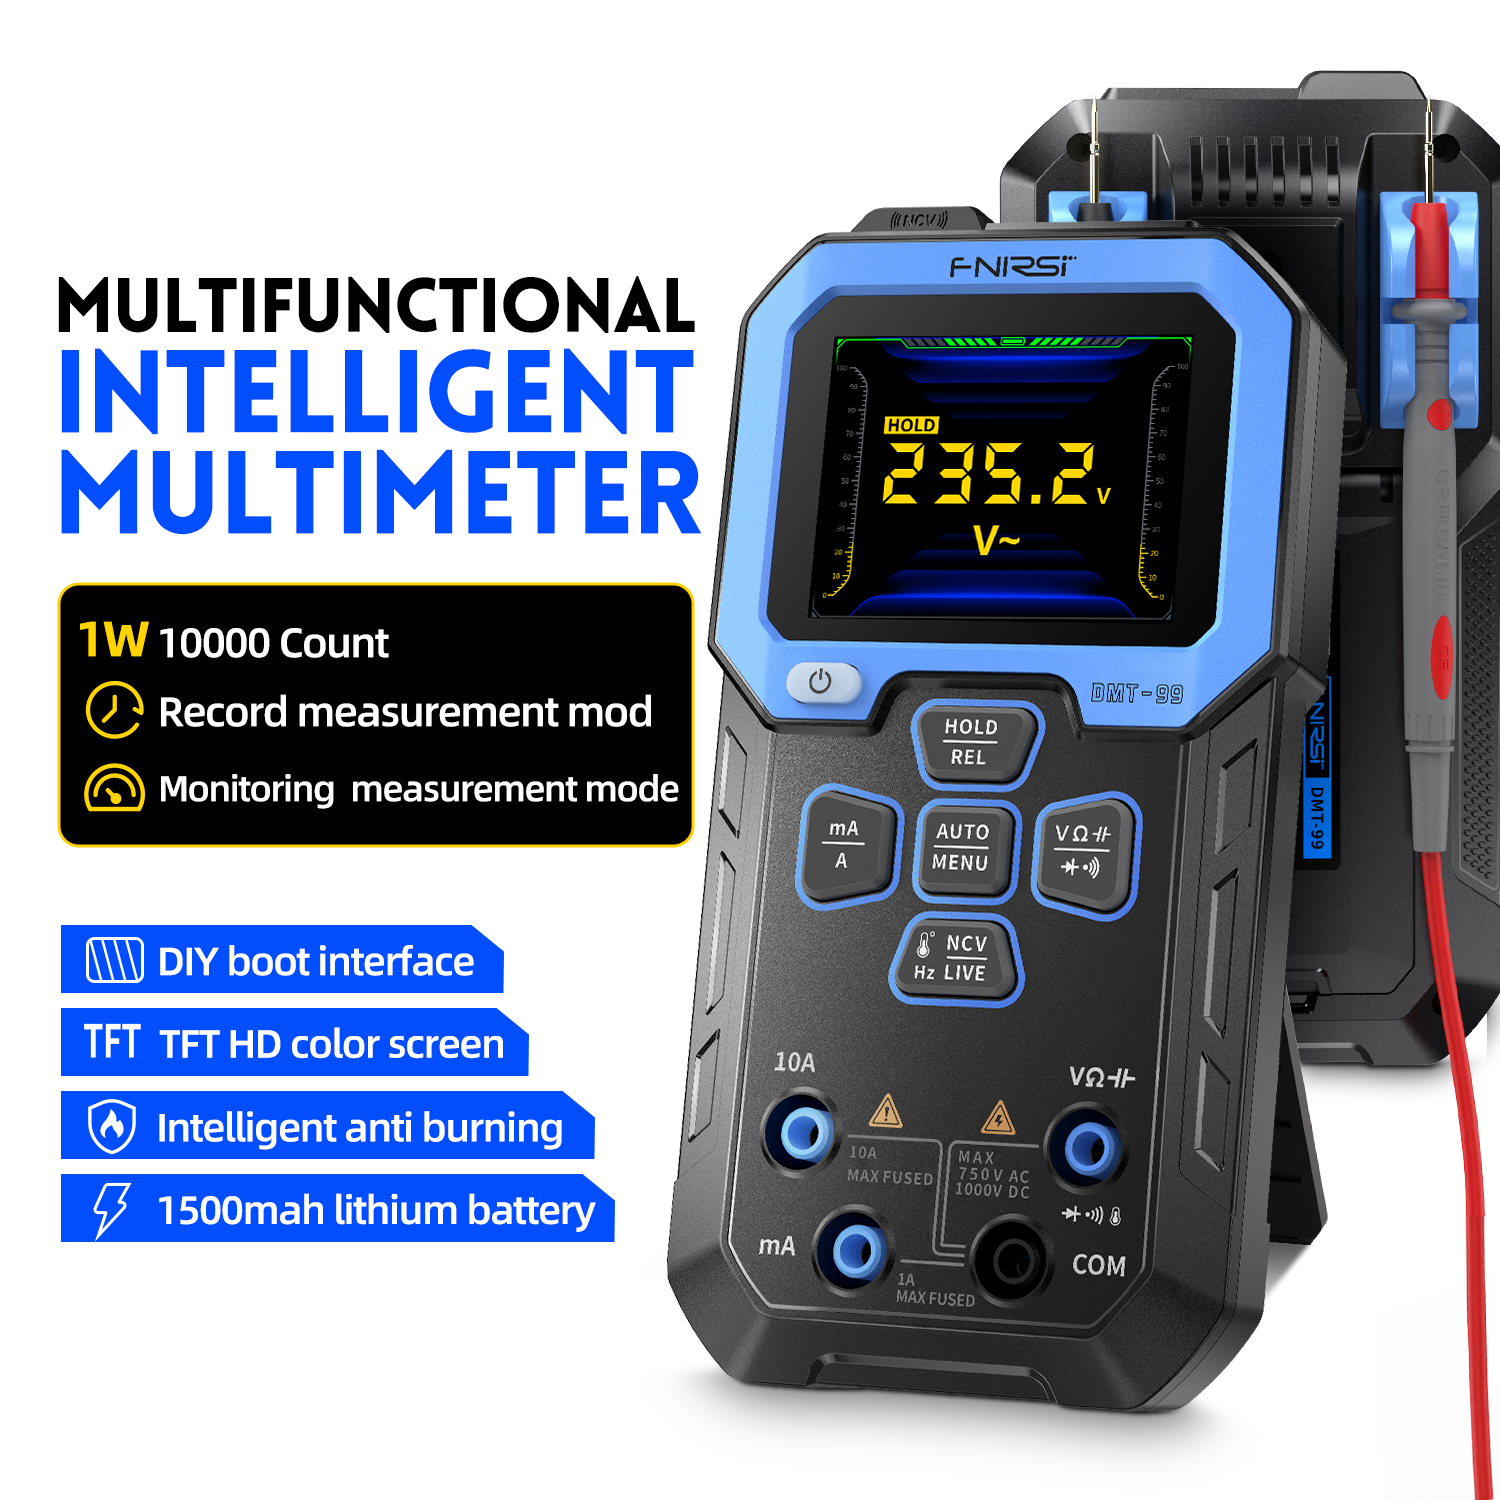 FNIRSIDMT-99Multimeter